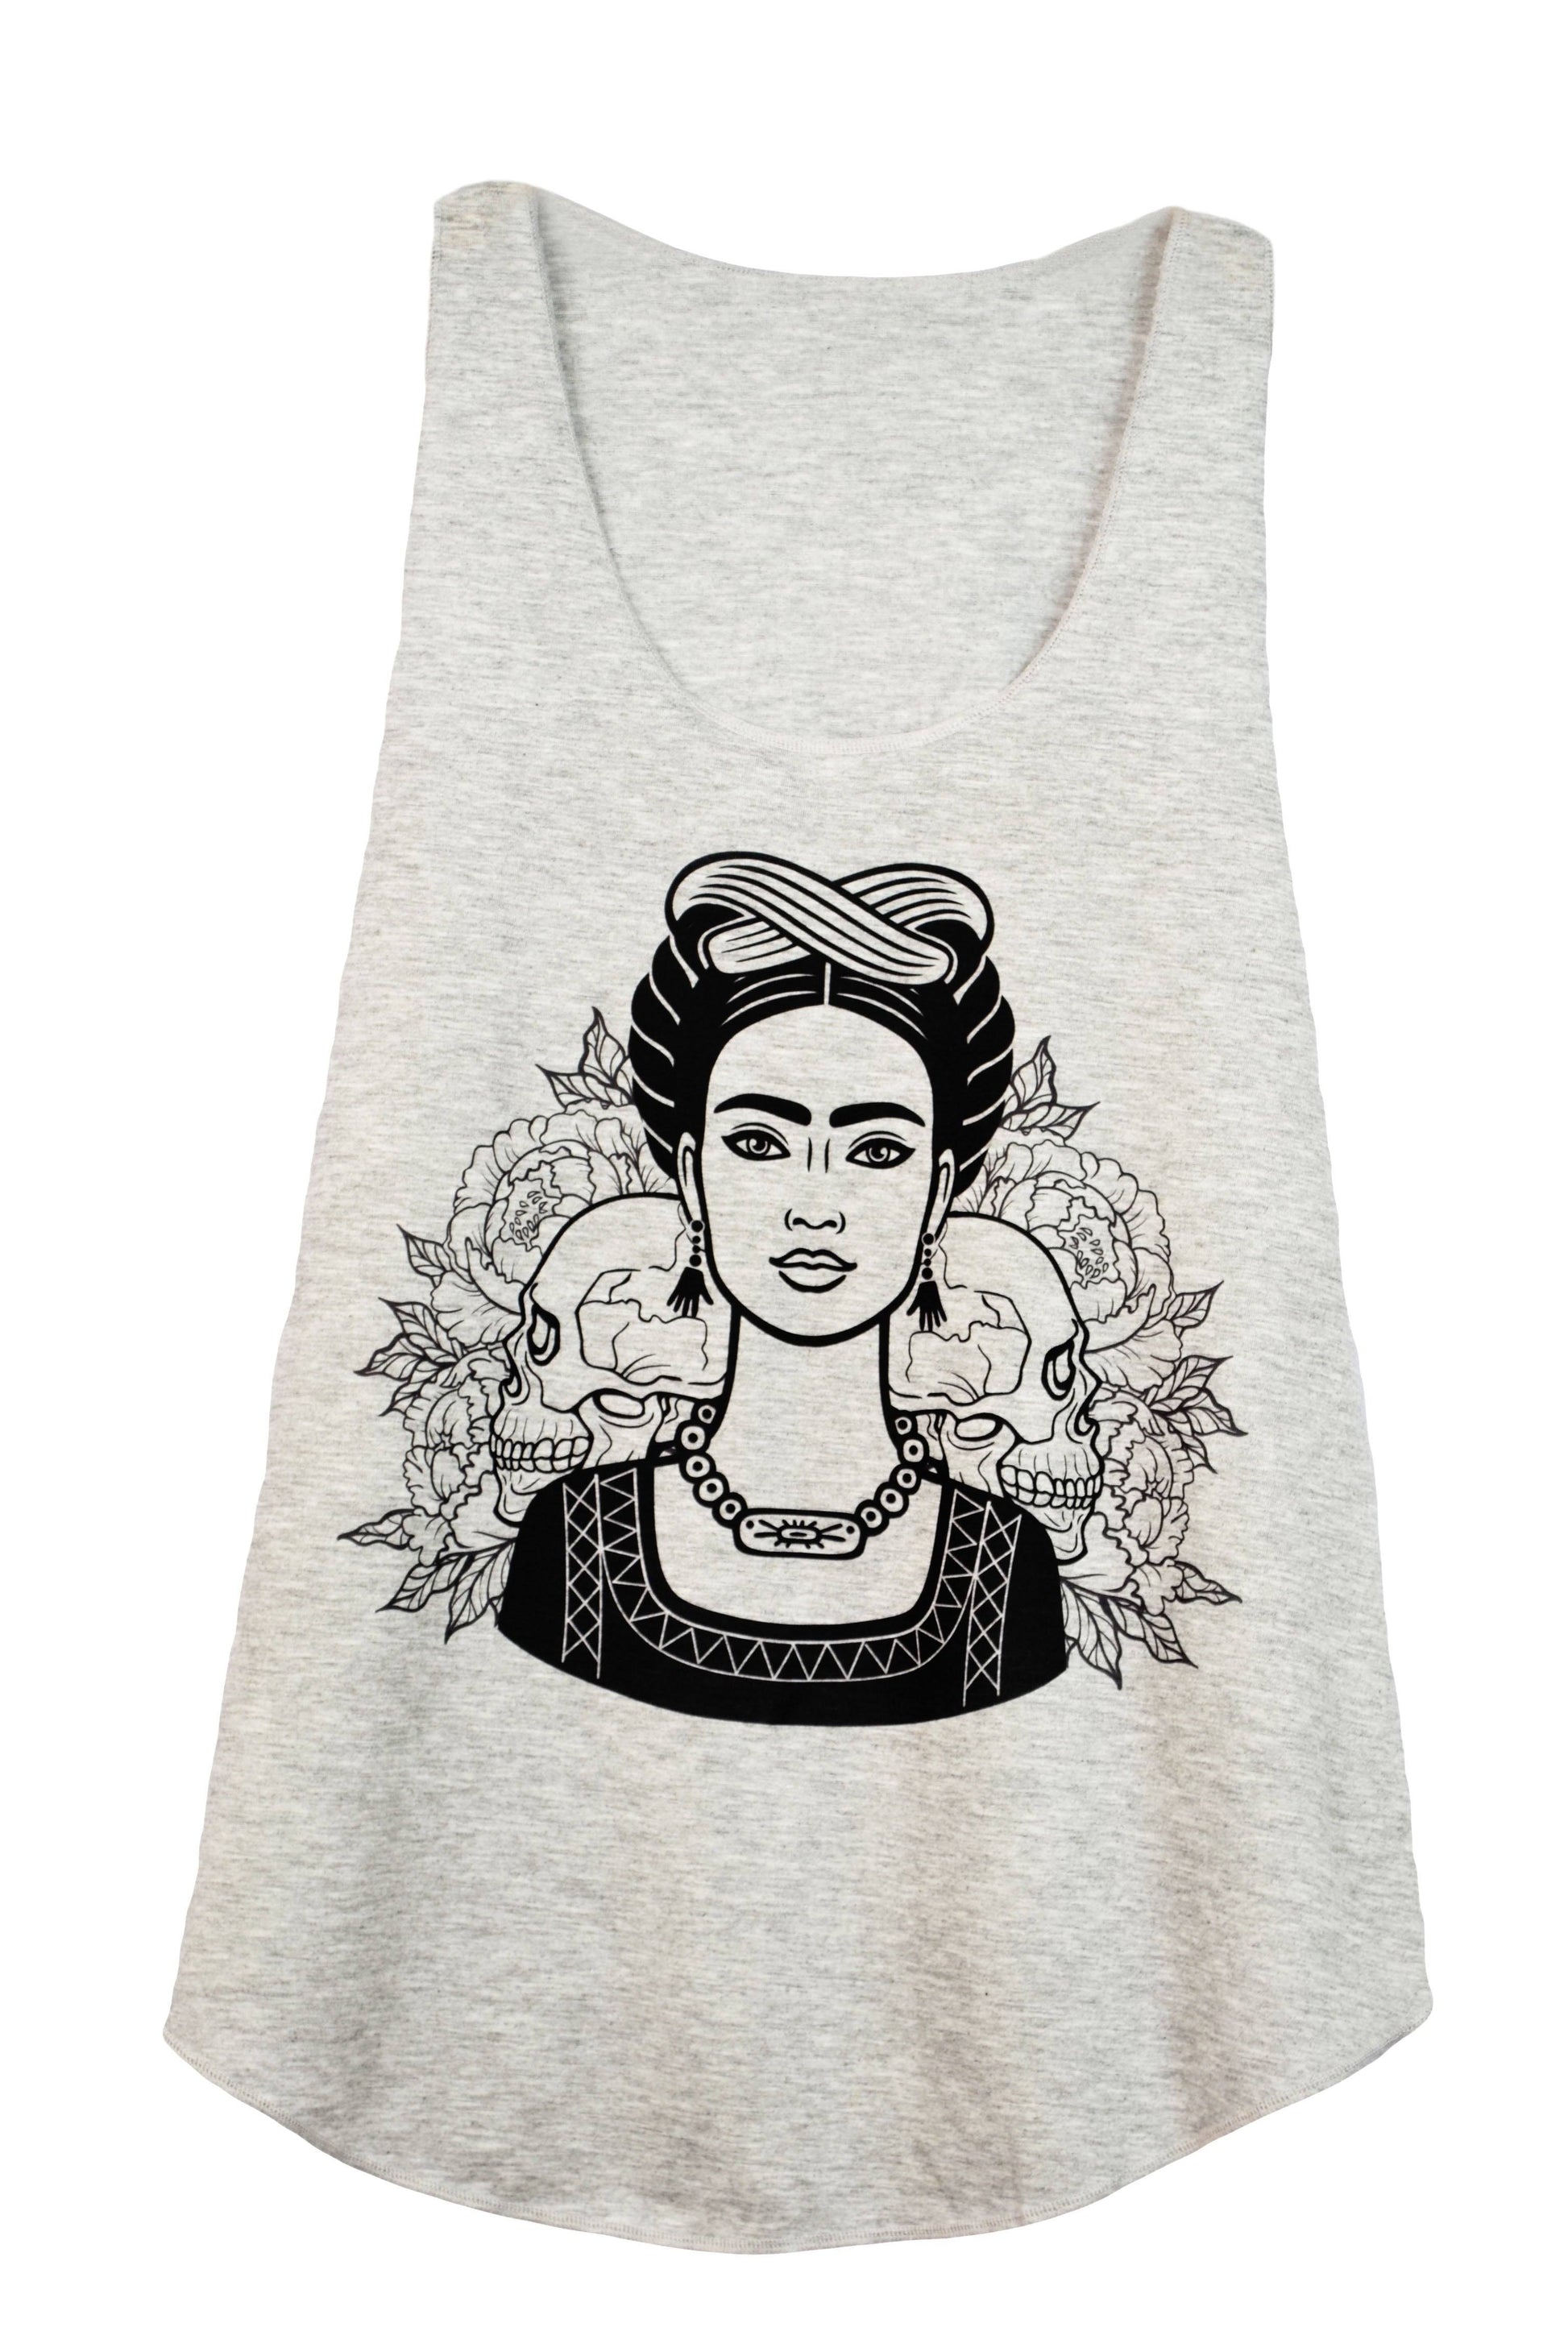 Débardeur femme couleur gris imprimé illustration frida kahlo - GL BOUTIK